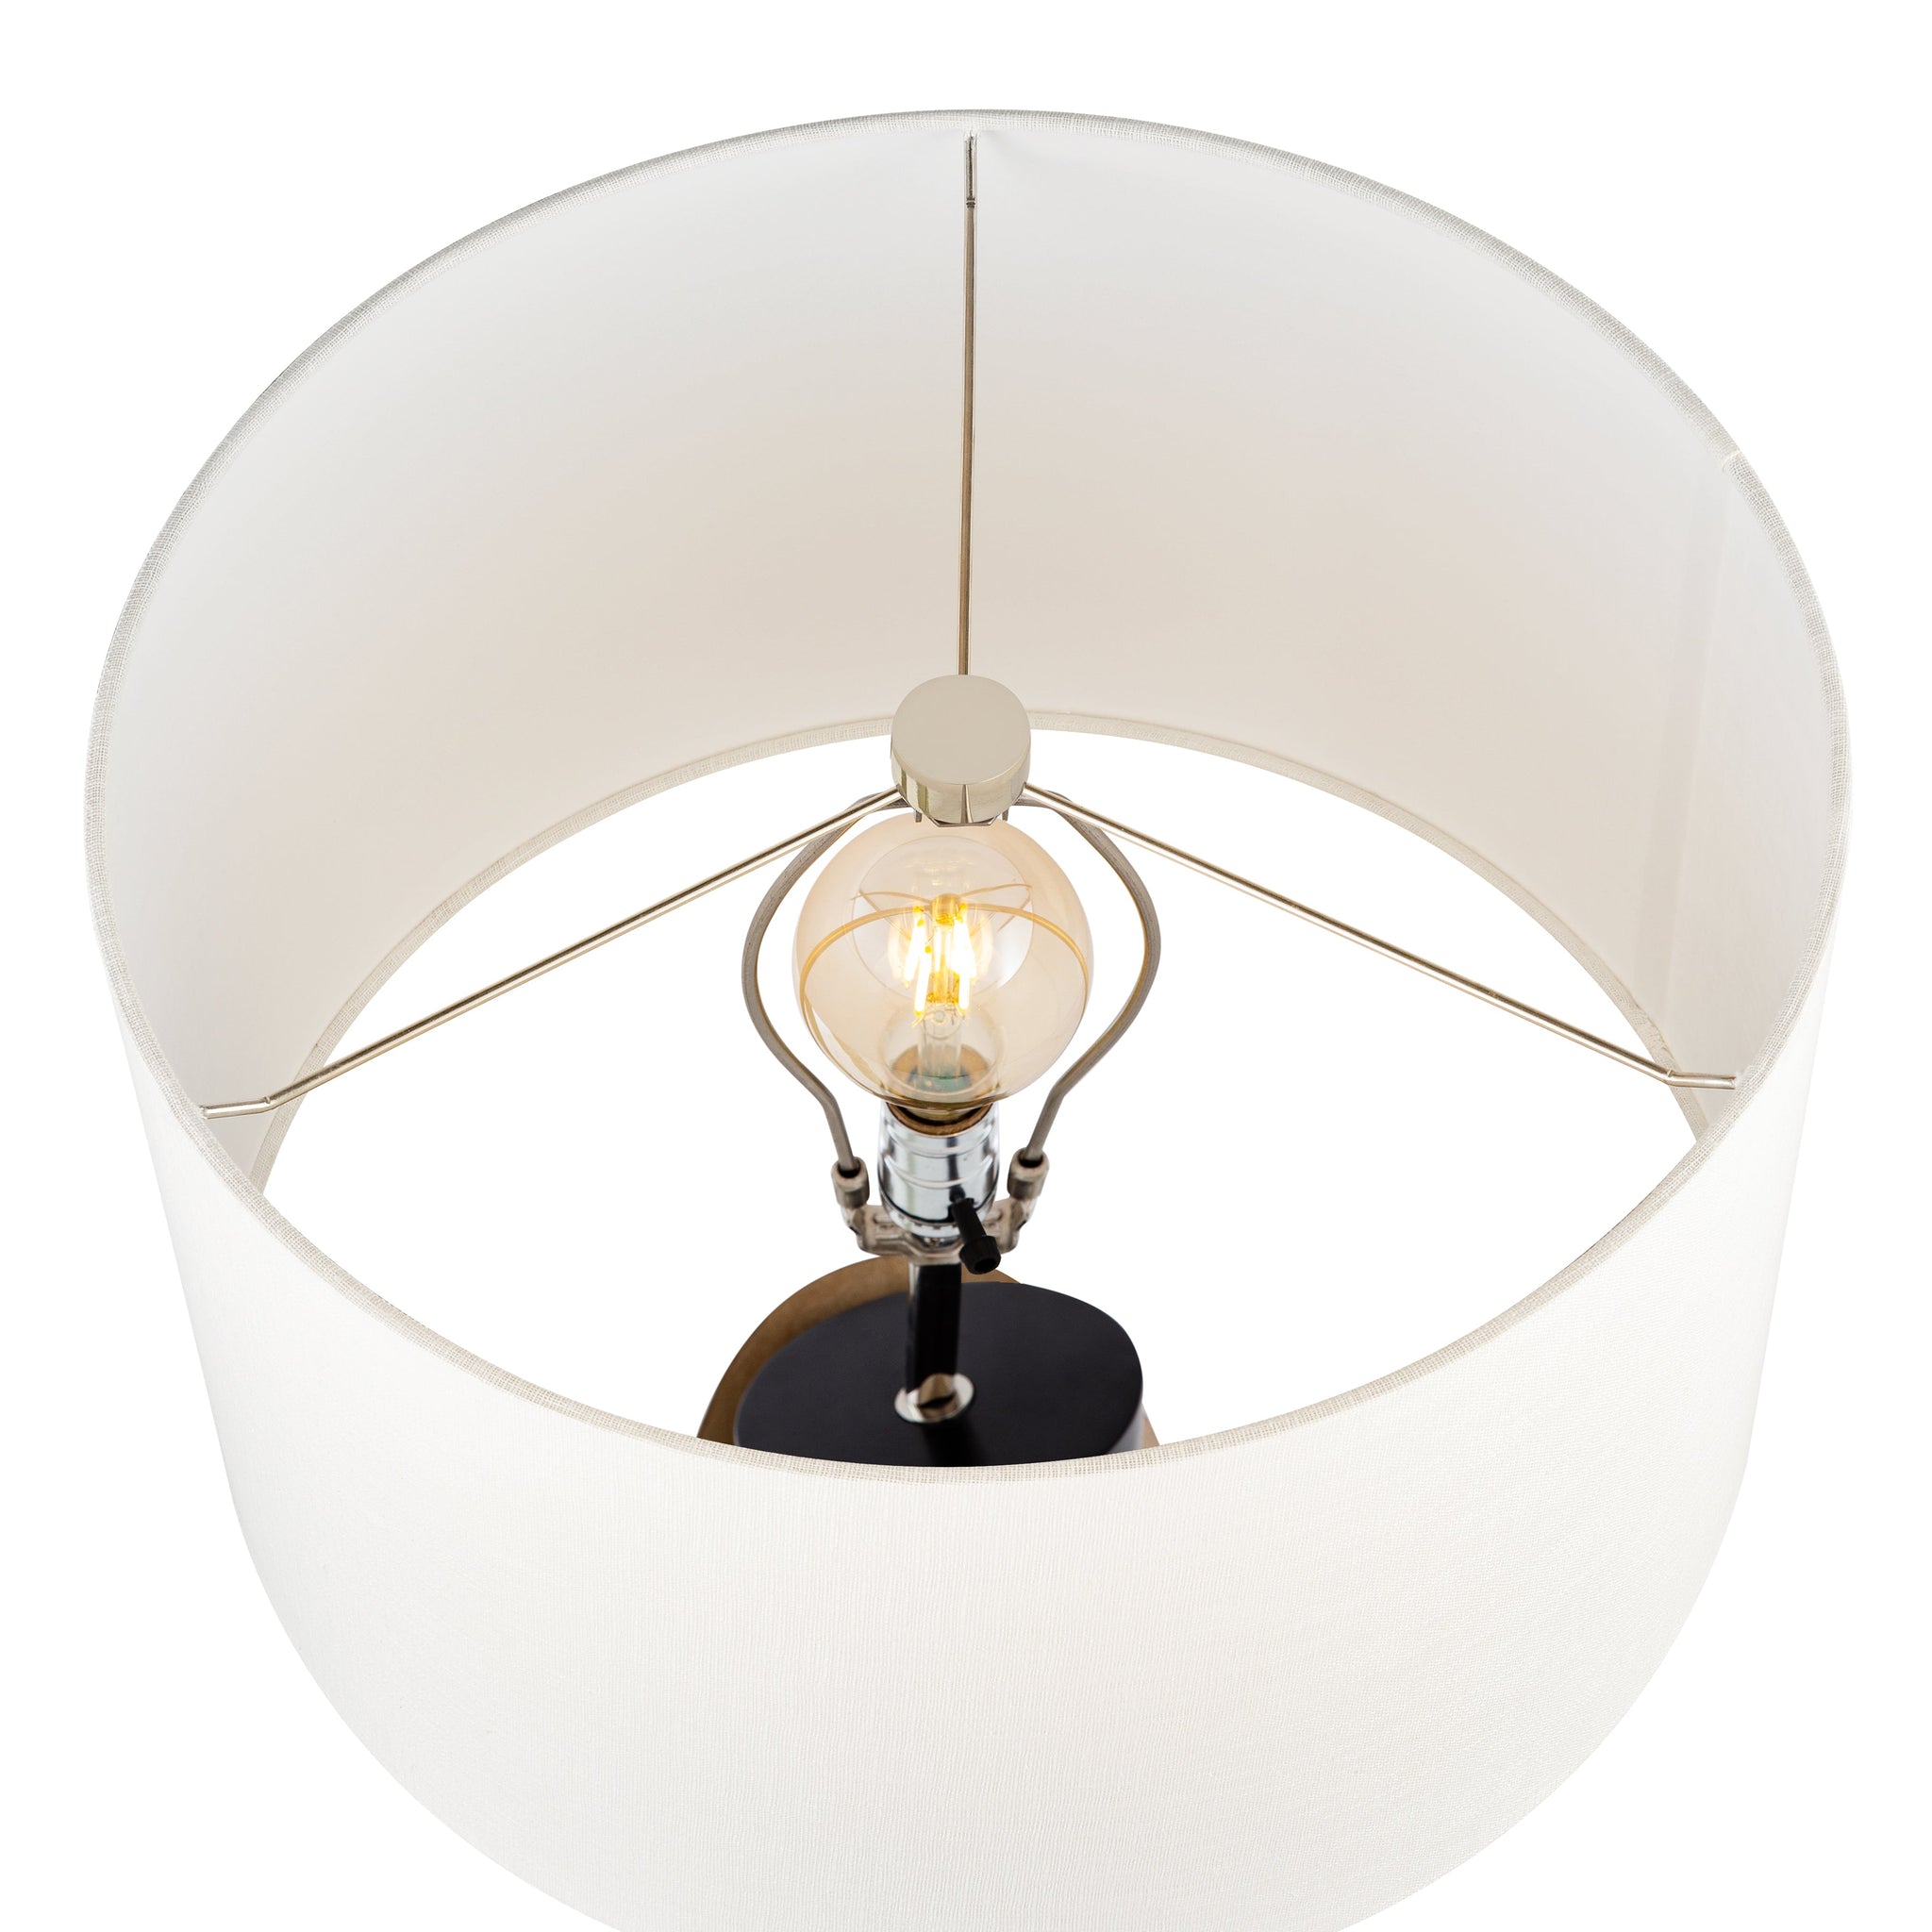 Kincaid 29.5" High 1-Light Table Lamp